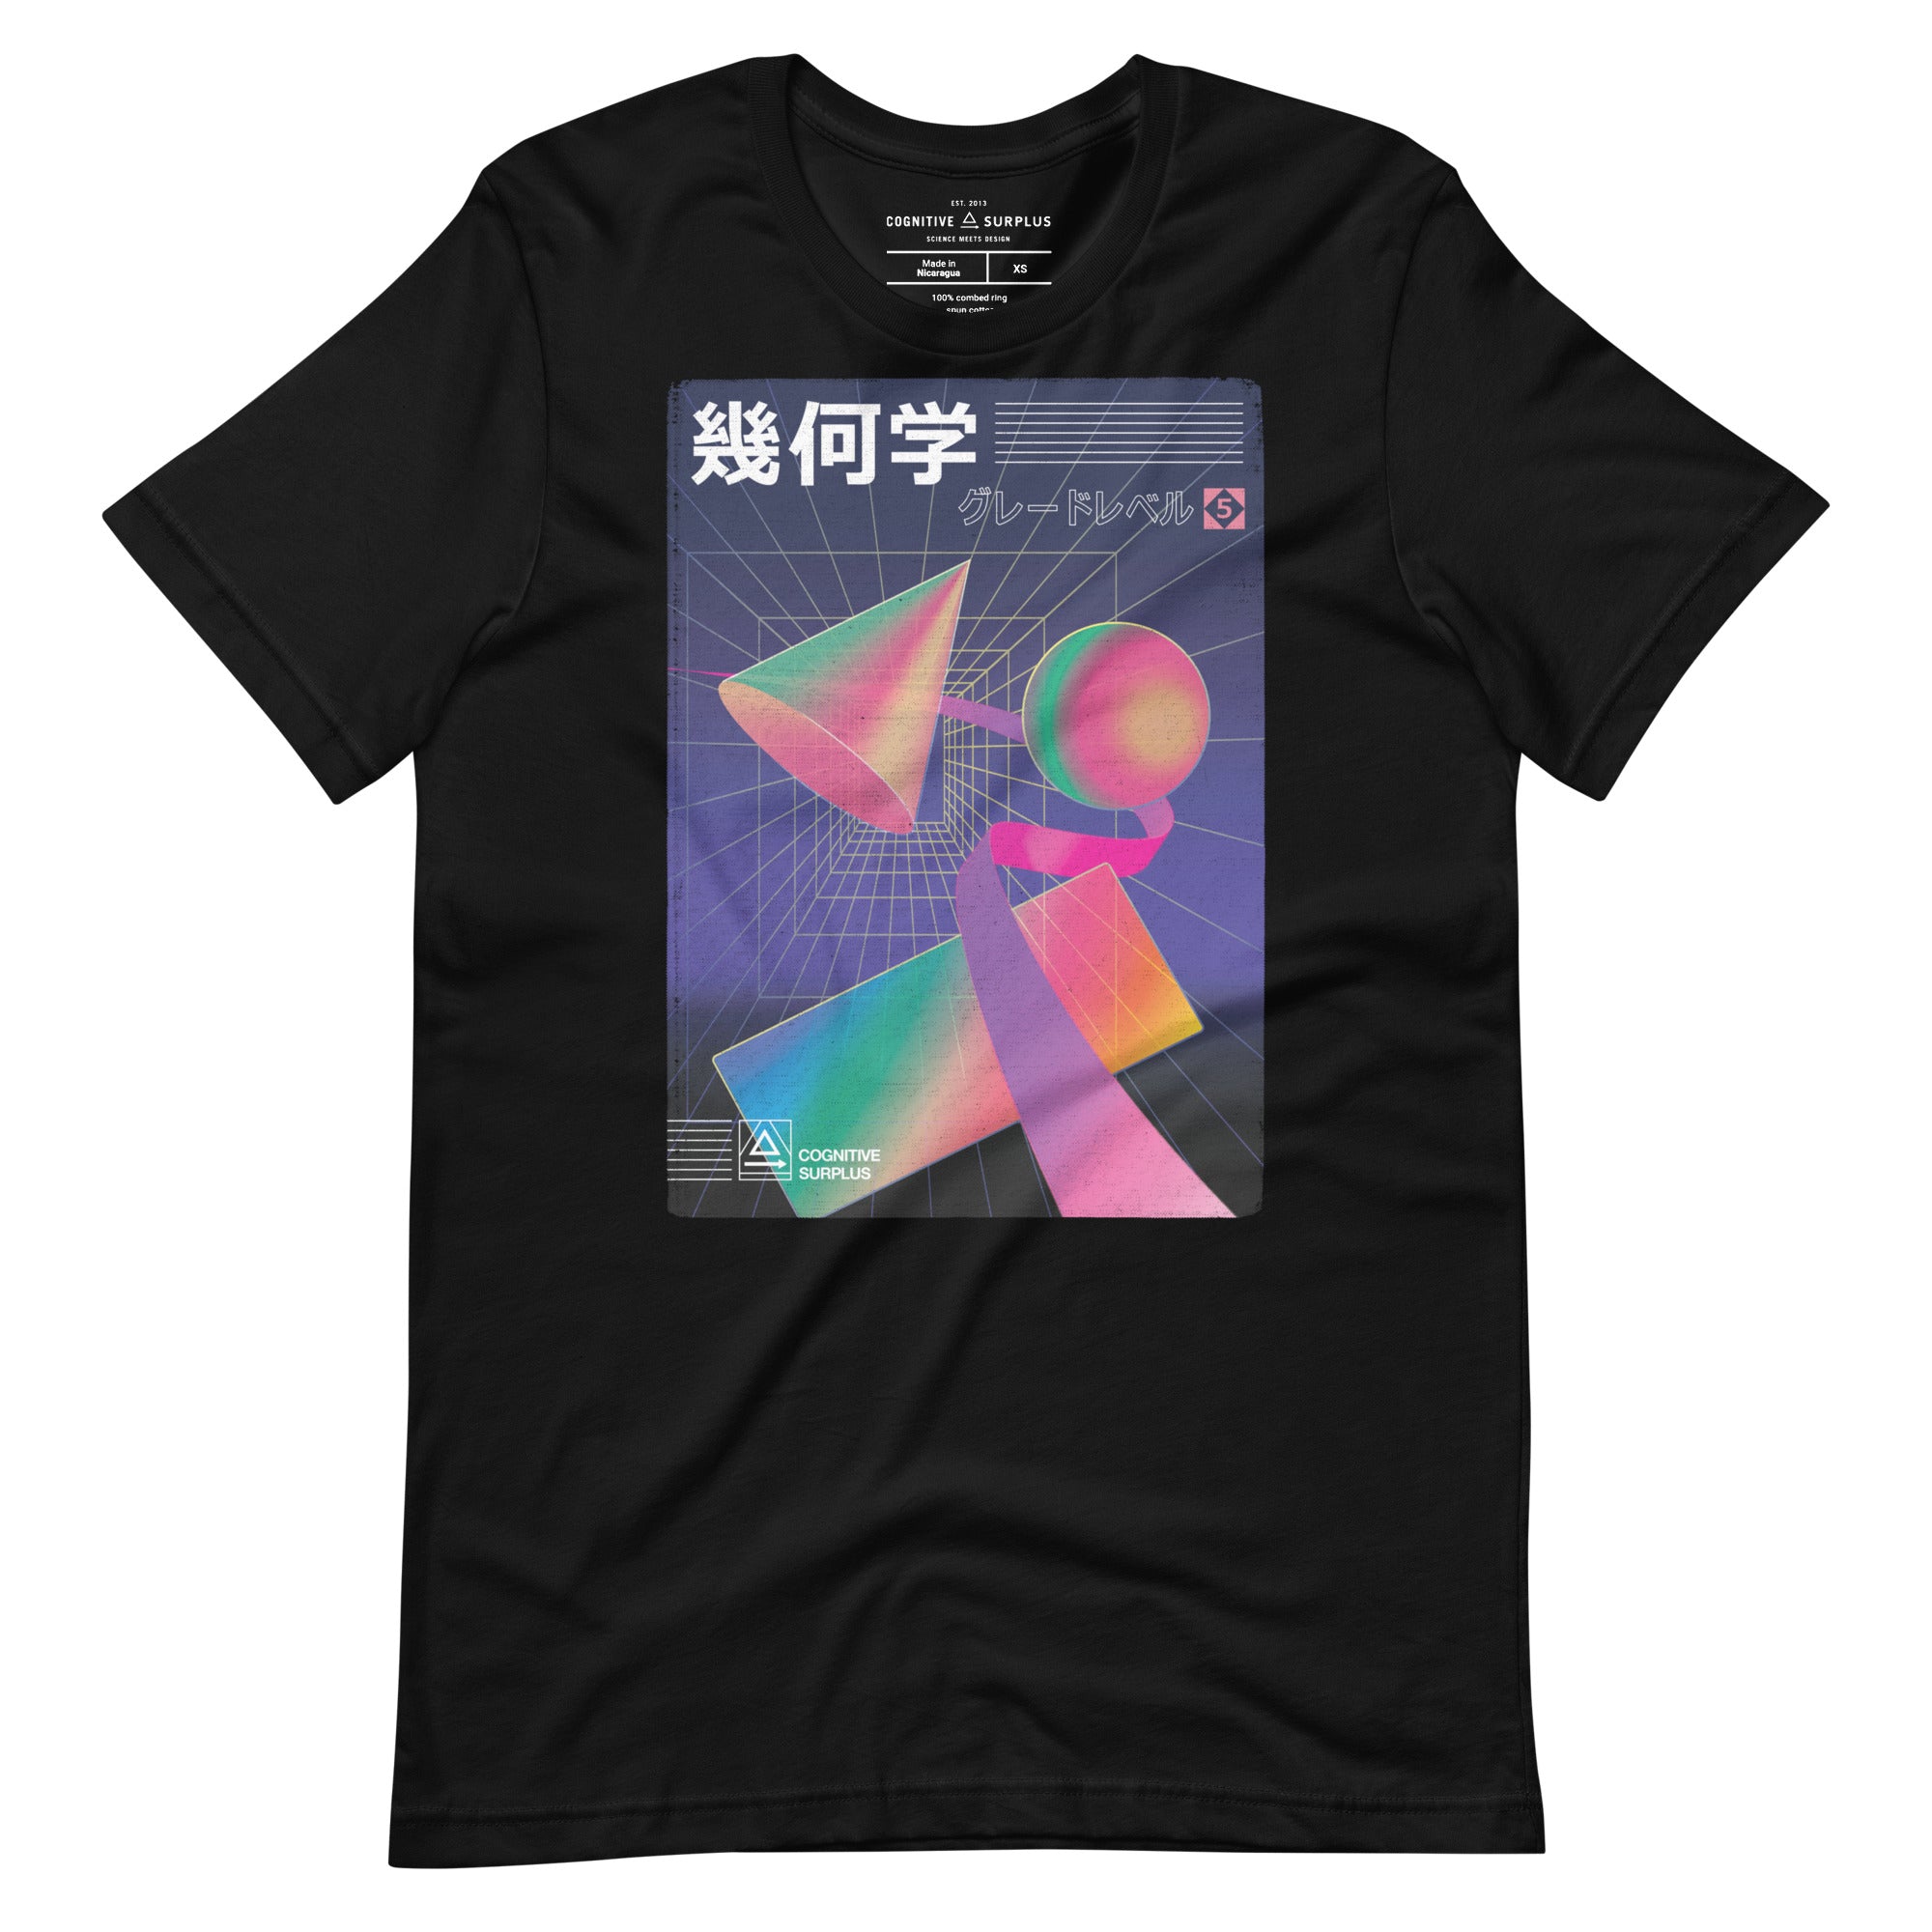 unisex-staple-t-shirt-black-front-659edf4fd6ed2.jpg